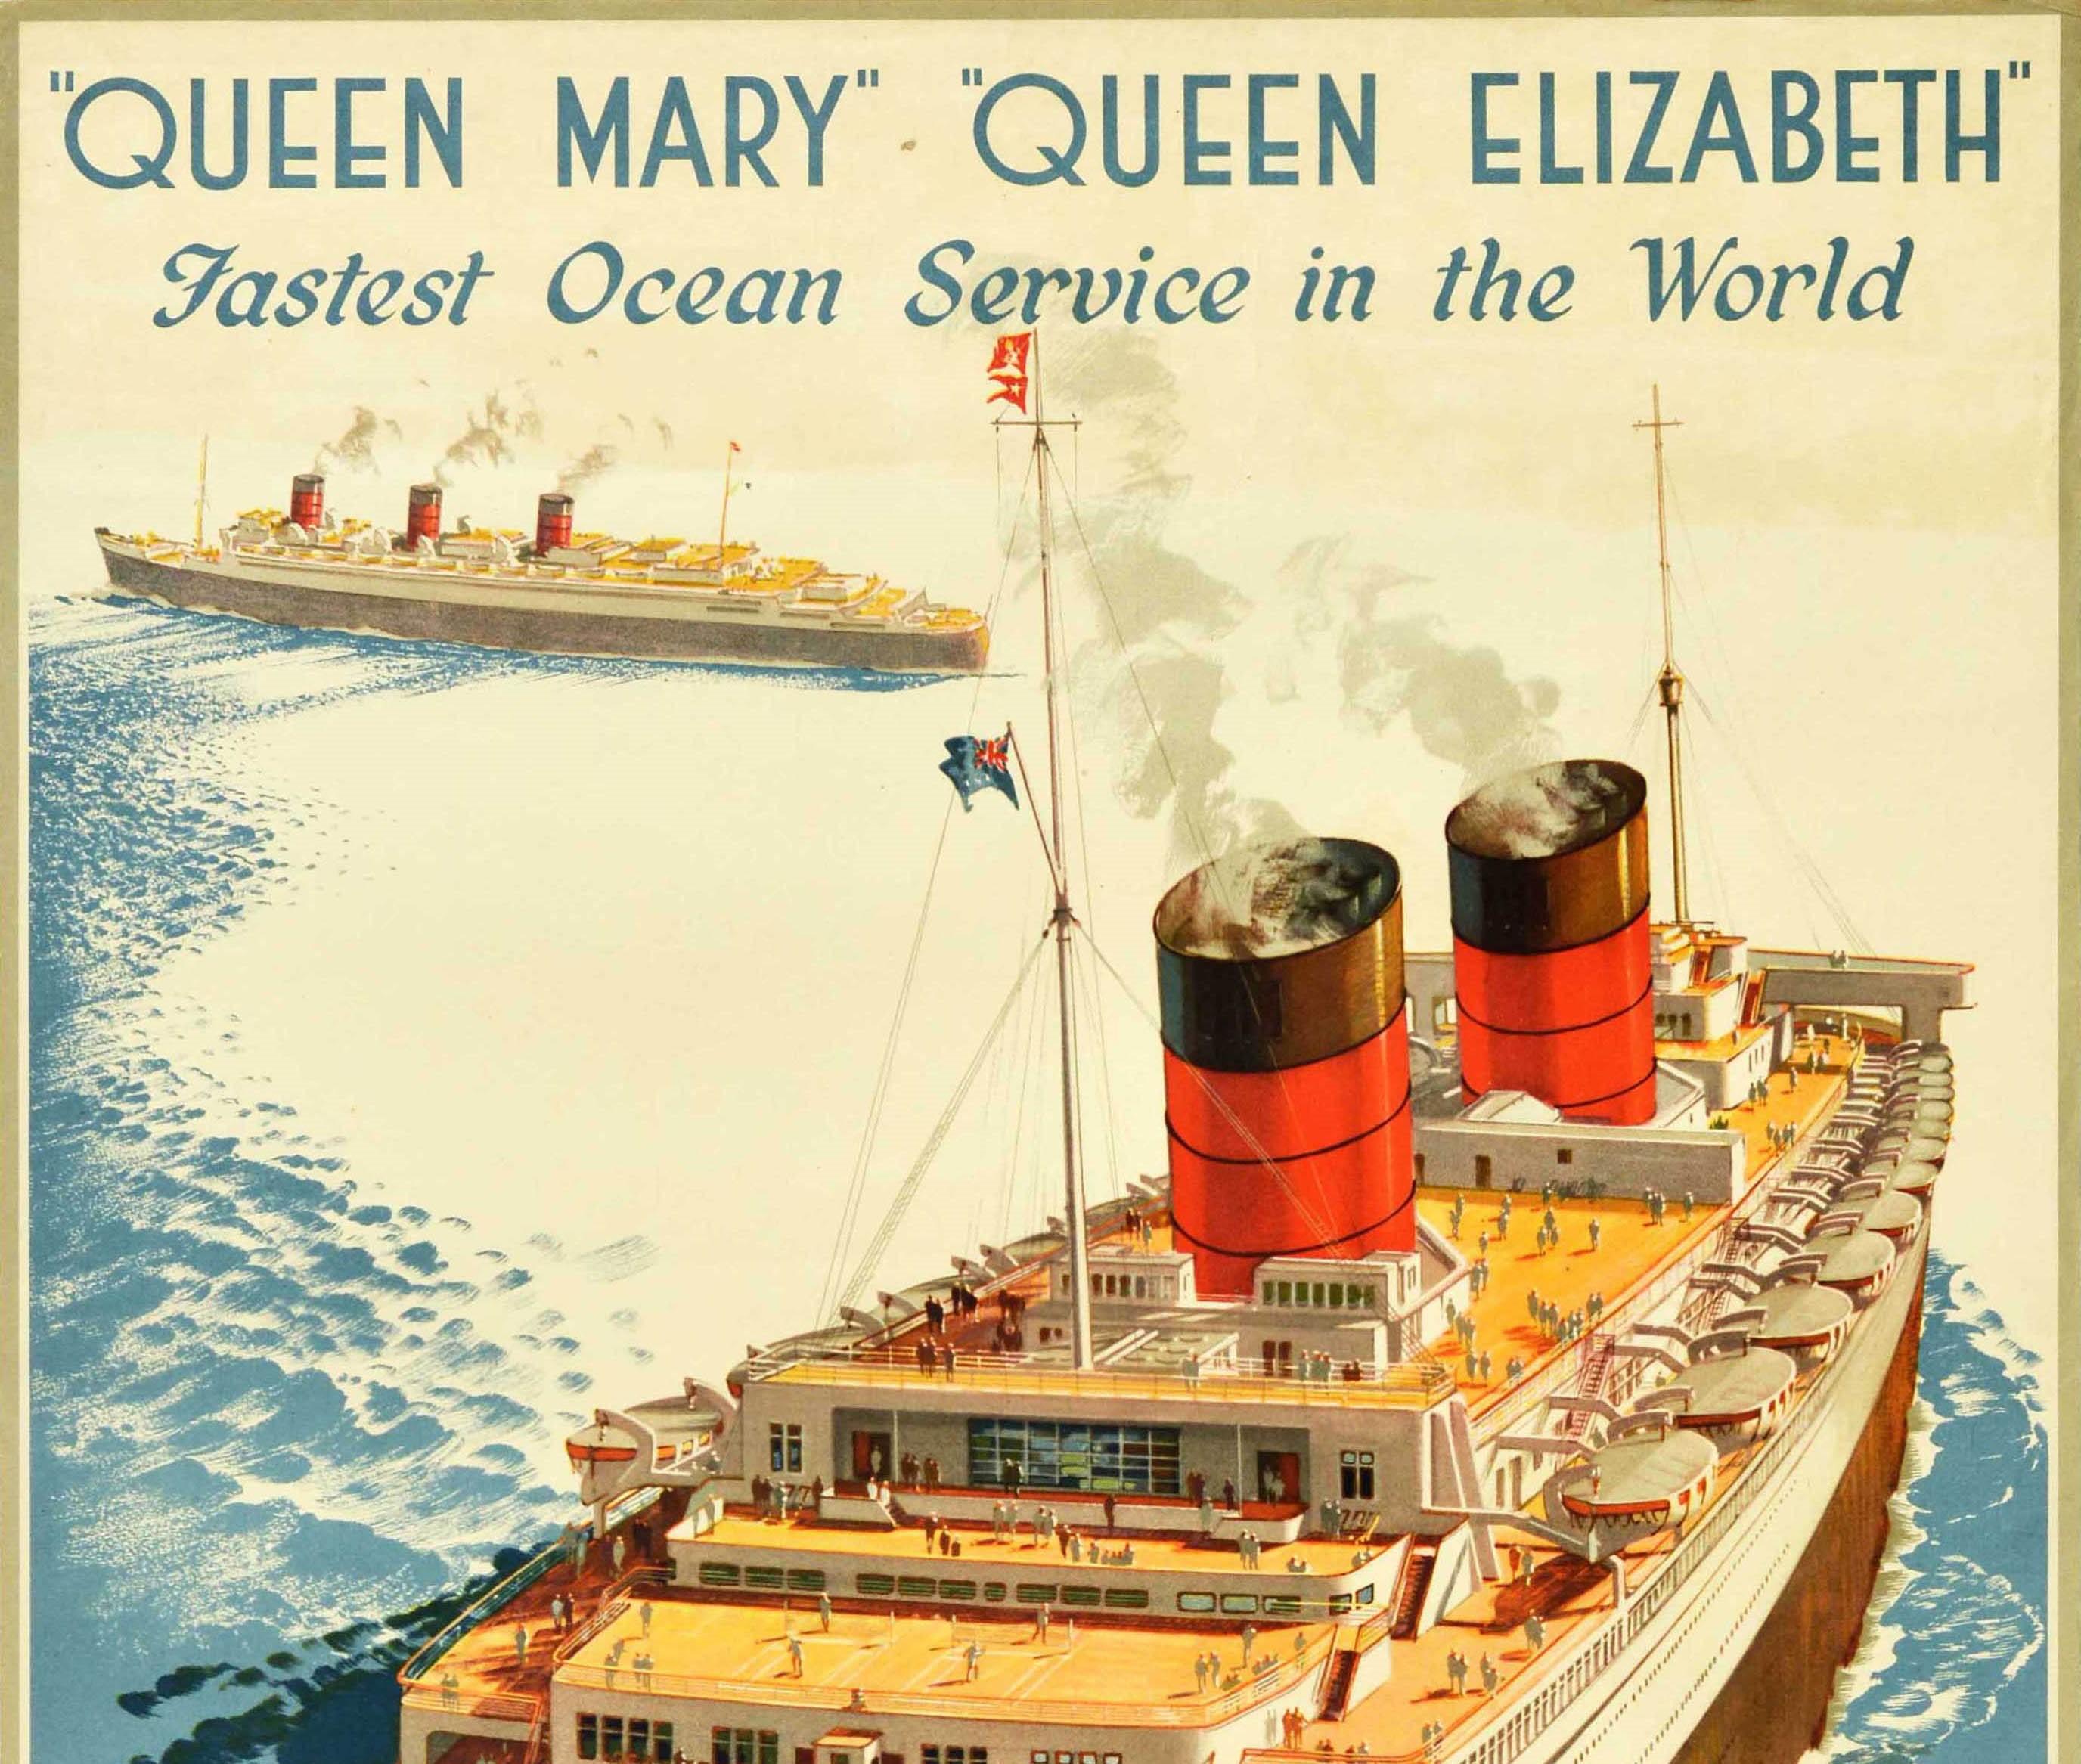 Original Vintage-Kreuzfahrtplakat - Queen Mary Queen Elizabeth Fastest Ocean Service in the World Cunard White Star - mit einem farbenfrohen Bild der beiden Ozeandampfer auf See, das die Passagiere zeigt, die ihre Kreuzfahrt auf den Decks der Queen